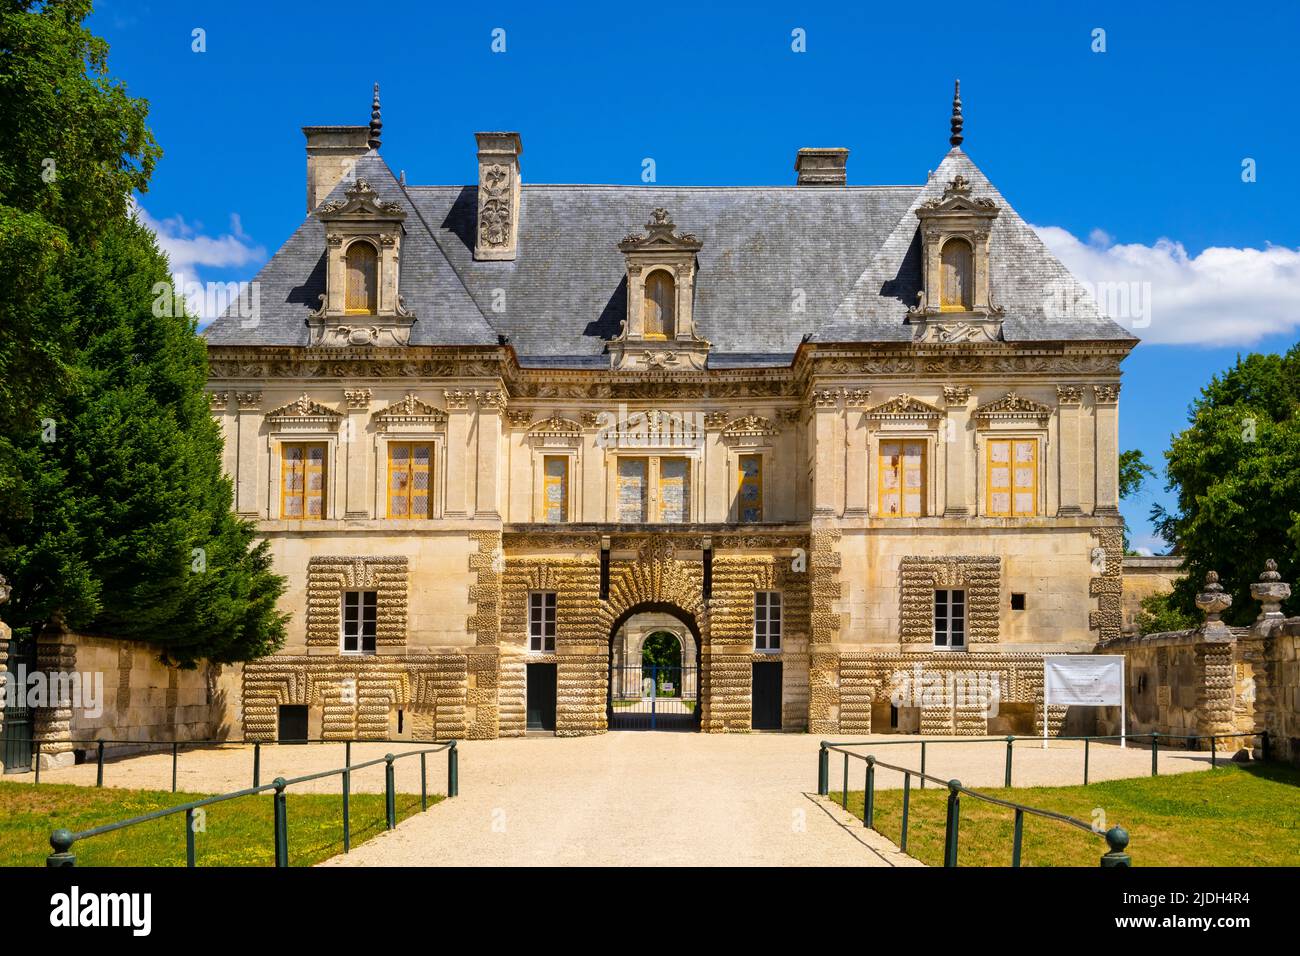 Vue de face de l'impressionnant château français, château de Tanlay. Le portail historique, au nord de la Bourgogne, dans le département de l'Yonne, F Banque D'Images